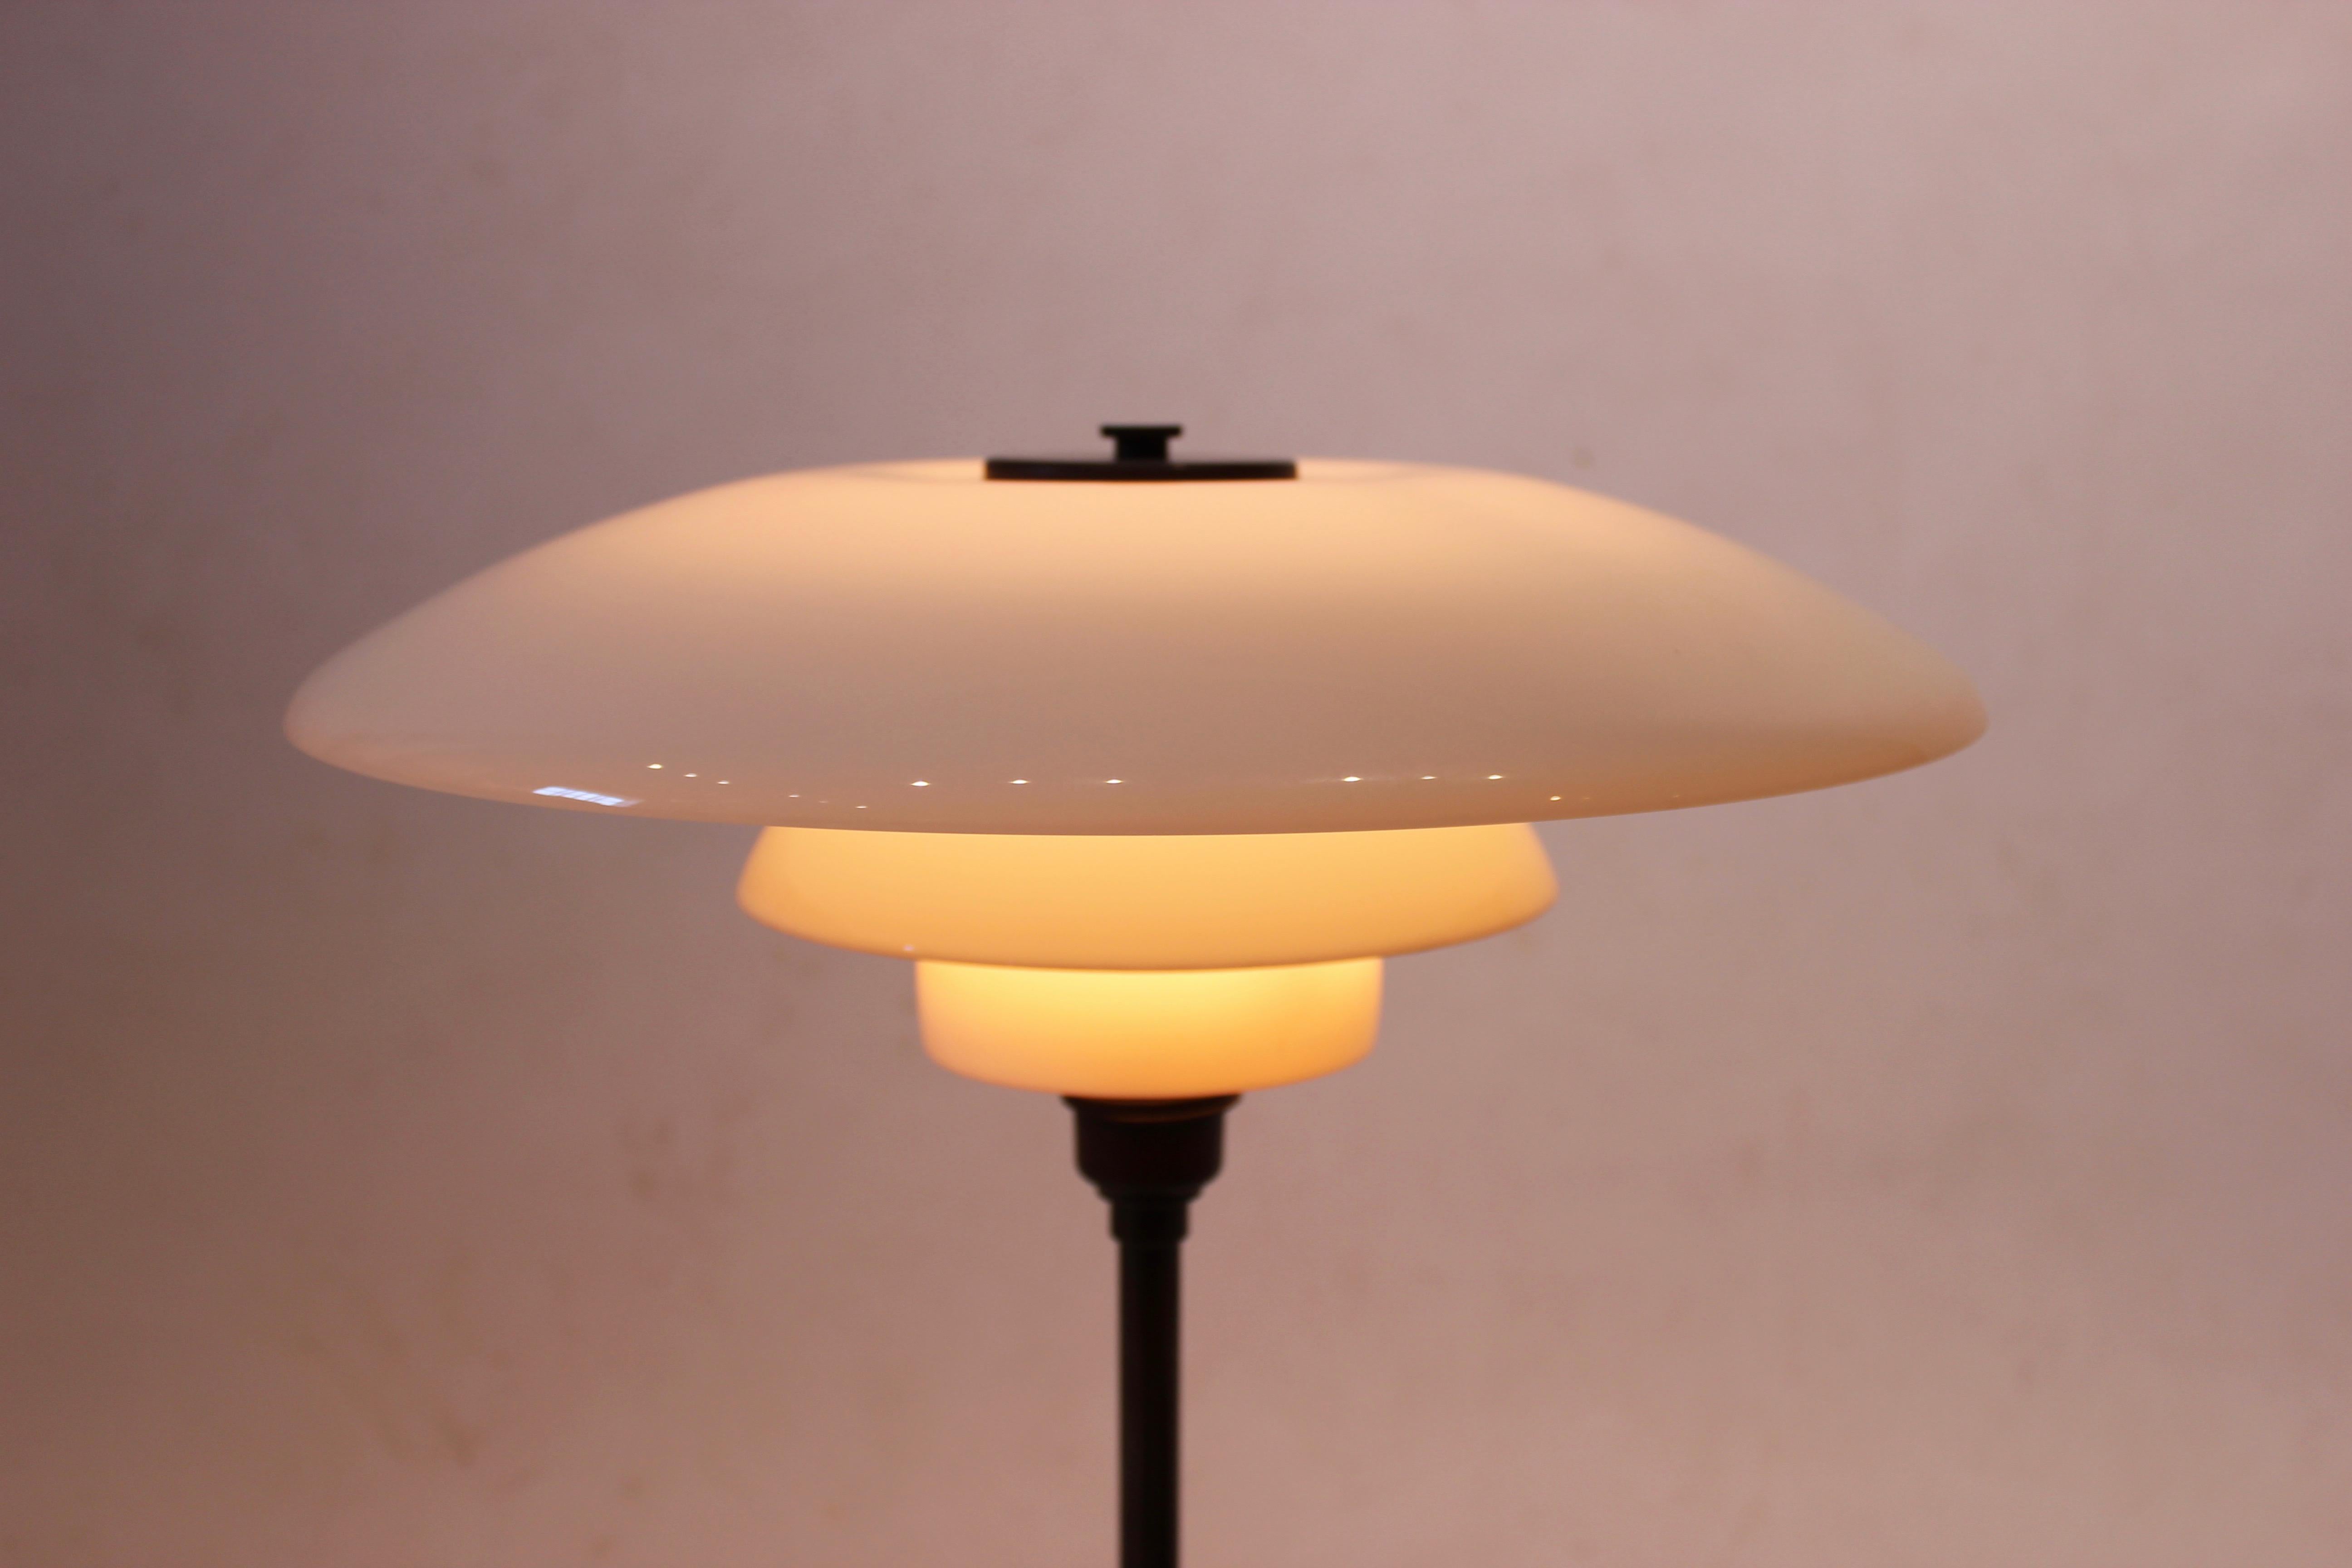 PH4½/2¾ Tischleuchte mit weißen Opalglasschirmen und Gestell aus brüniertem Messing. Die Leuchte wurde in den frühen 1930er Jahren von Poul Henningsen entworfen und von Louis Poulsen hergestellt. Der Artikel ist in sehr gutem Zustand.